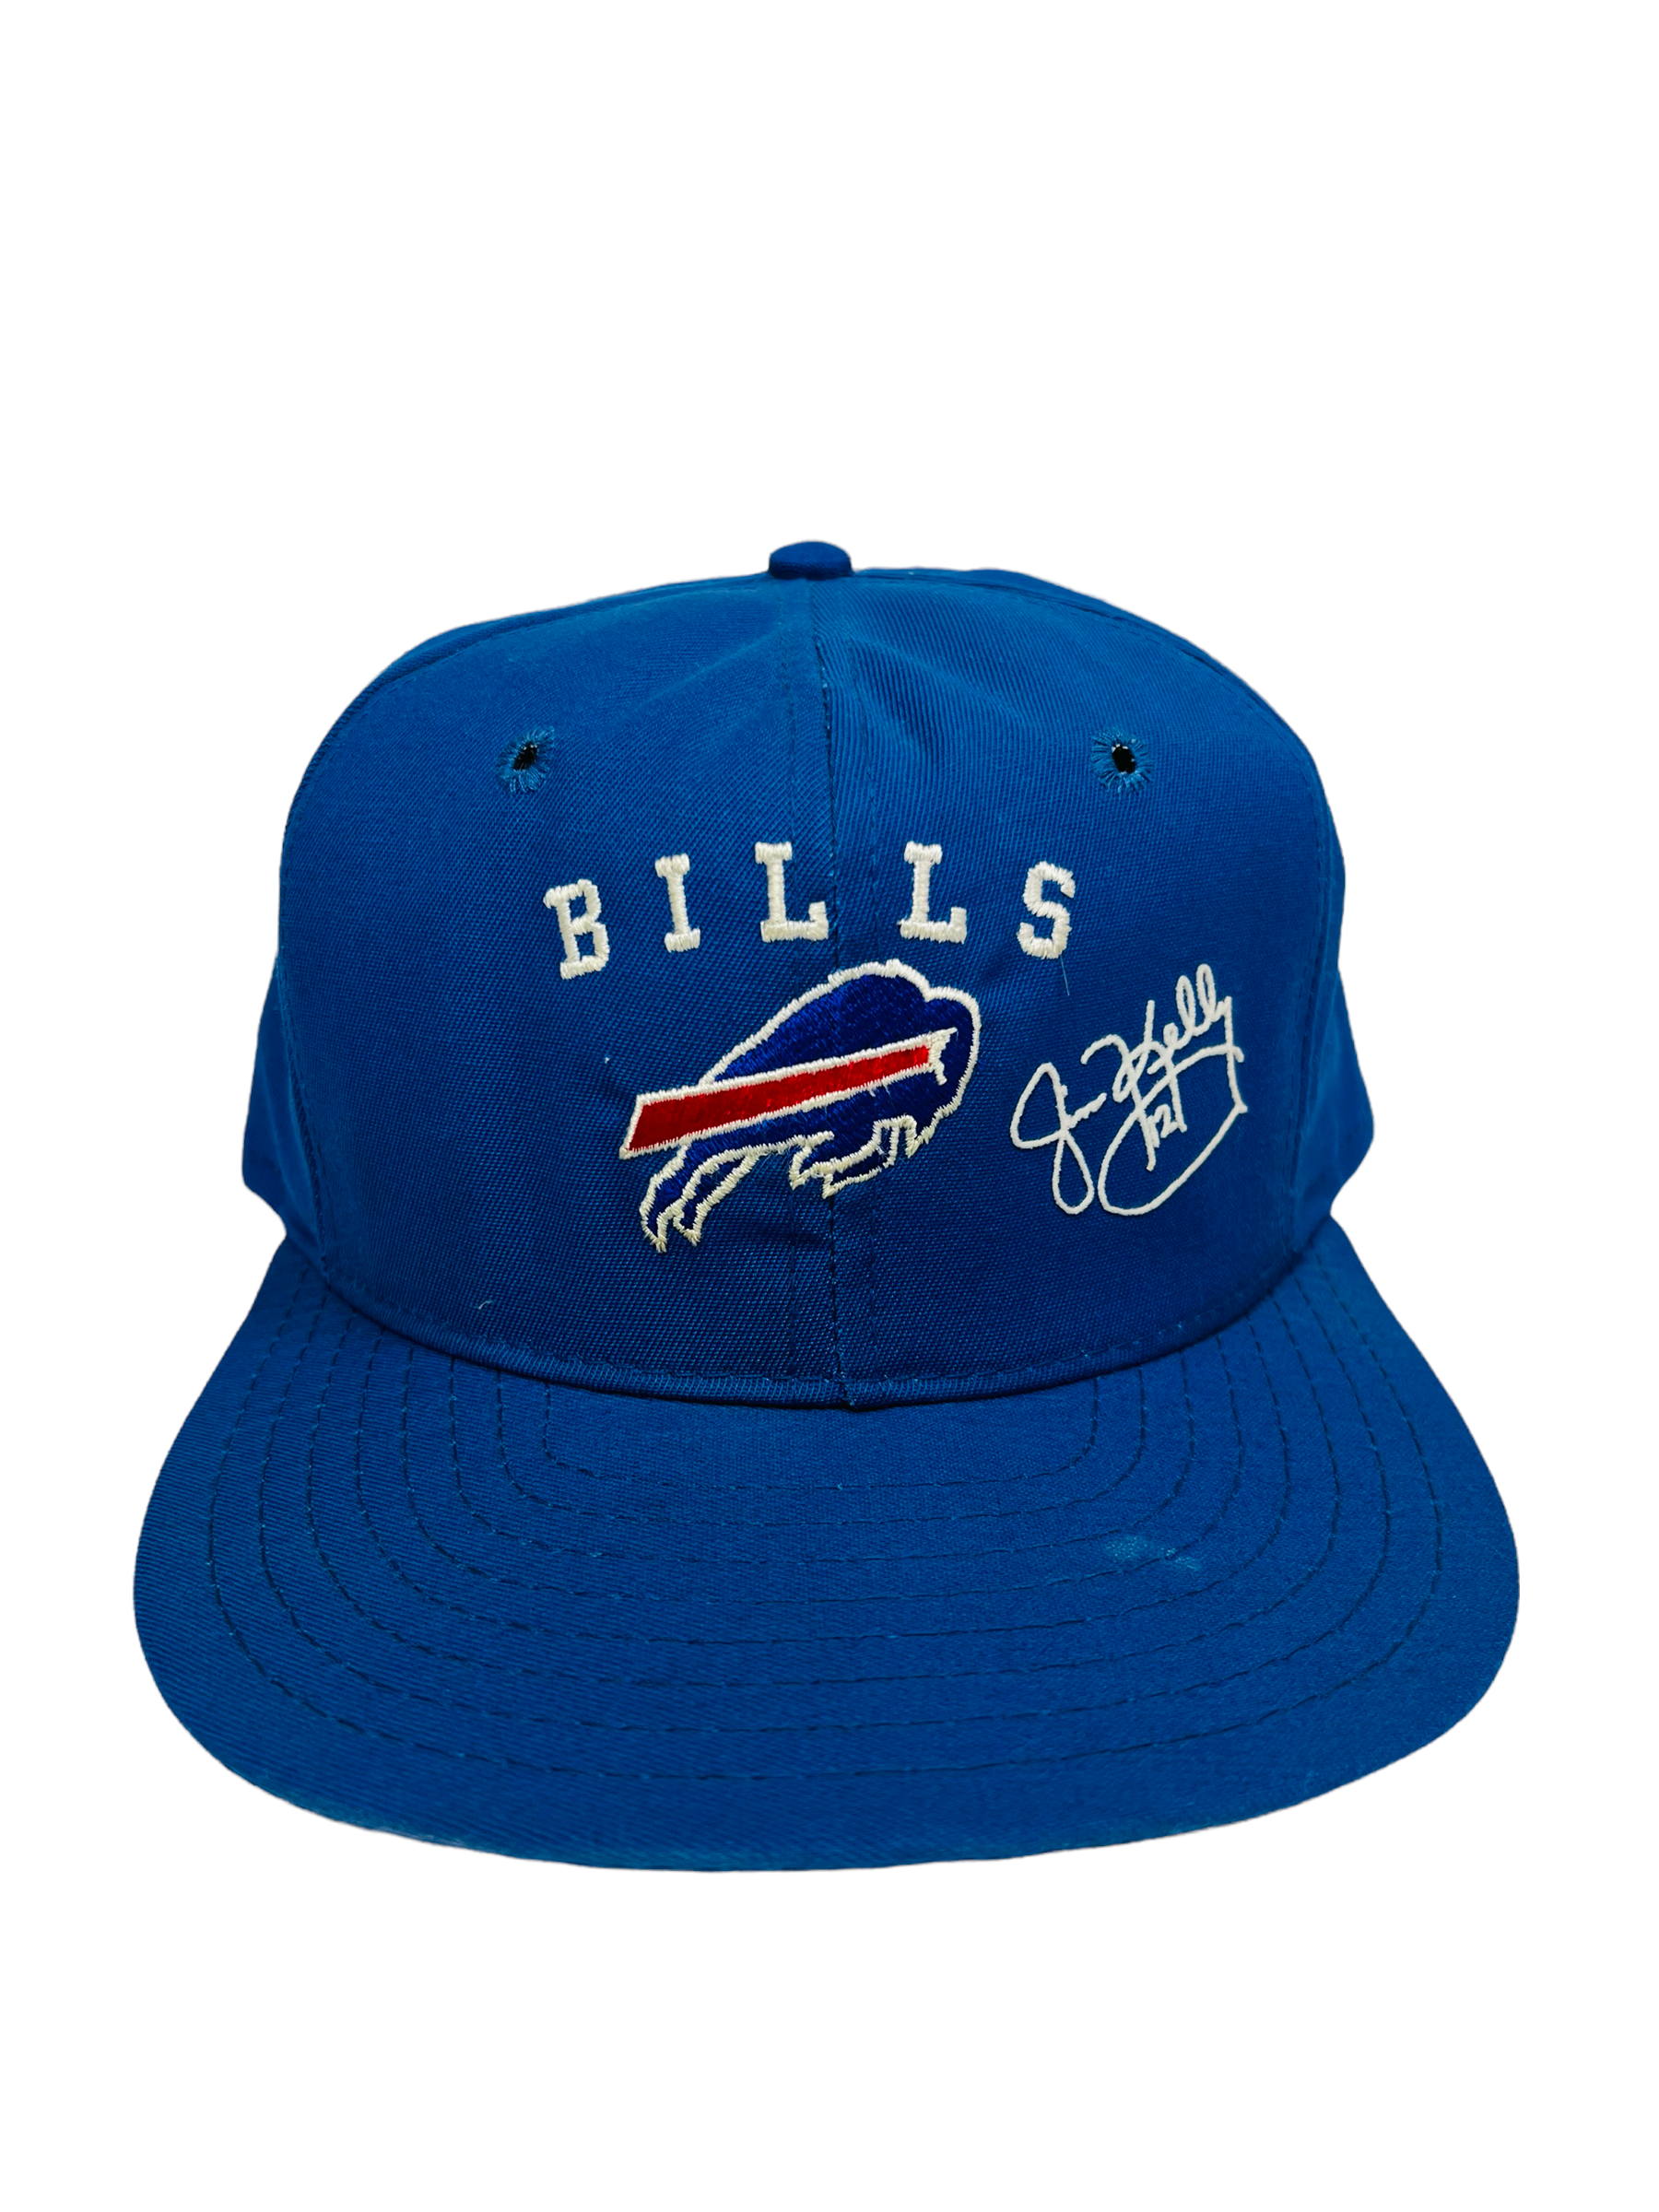 buffalo bills mitchell and ness hat